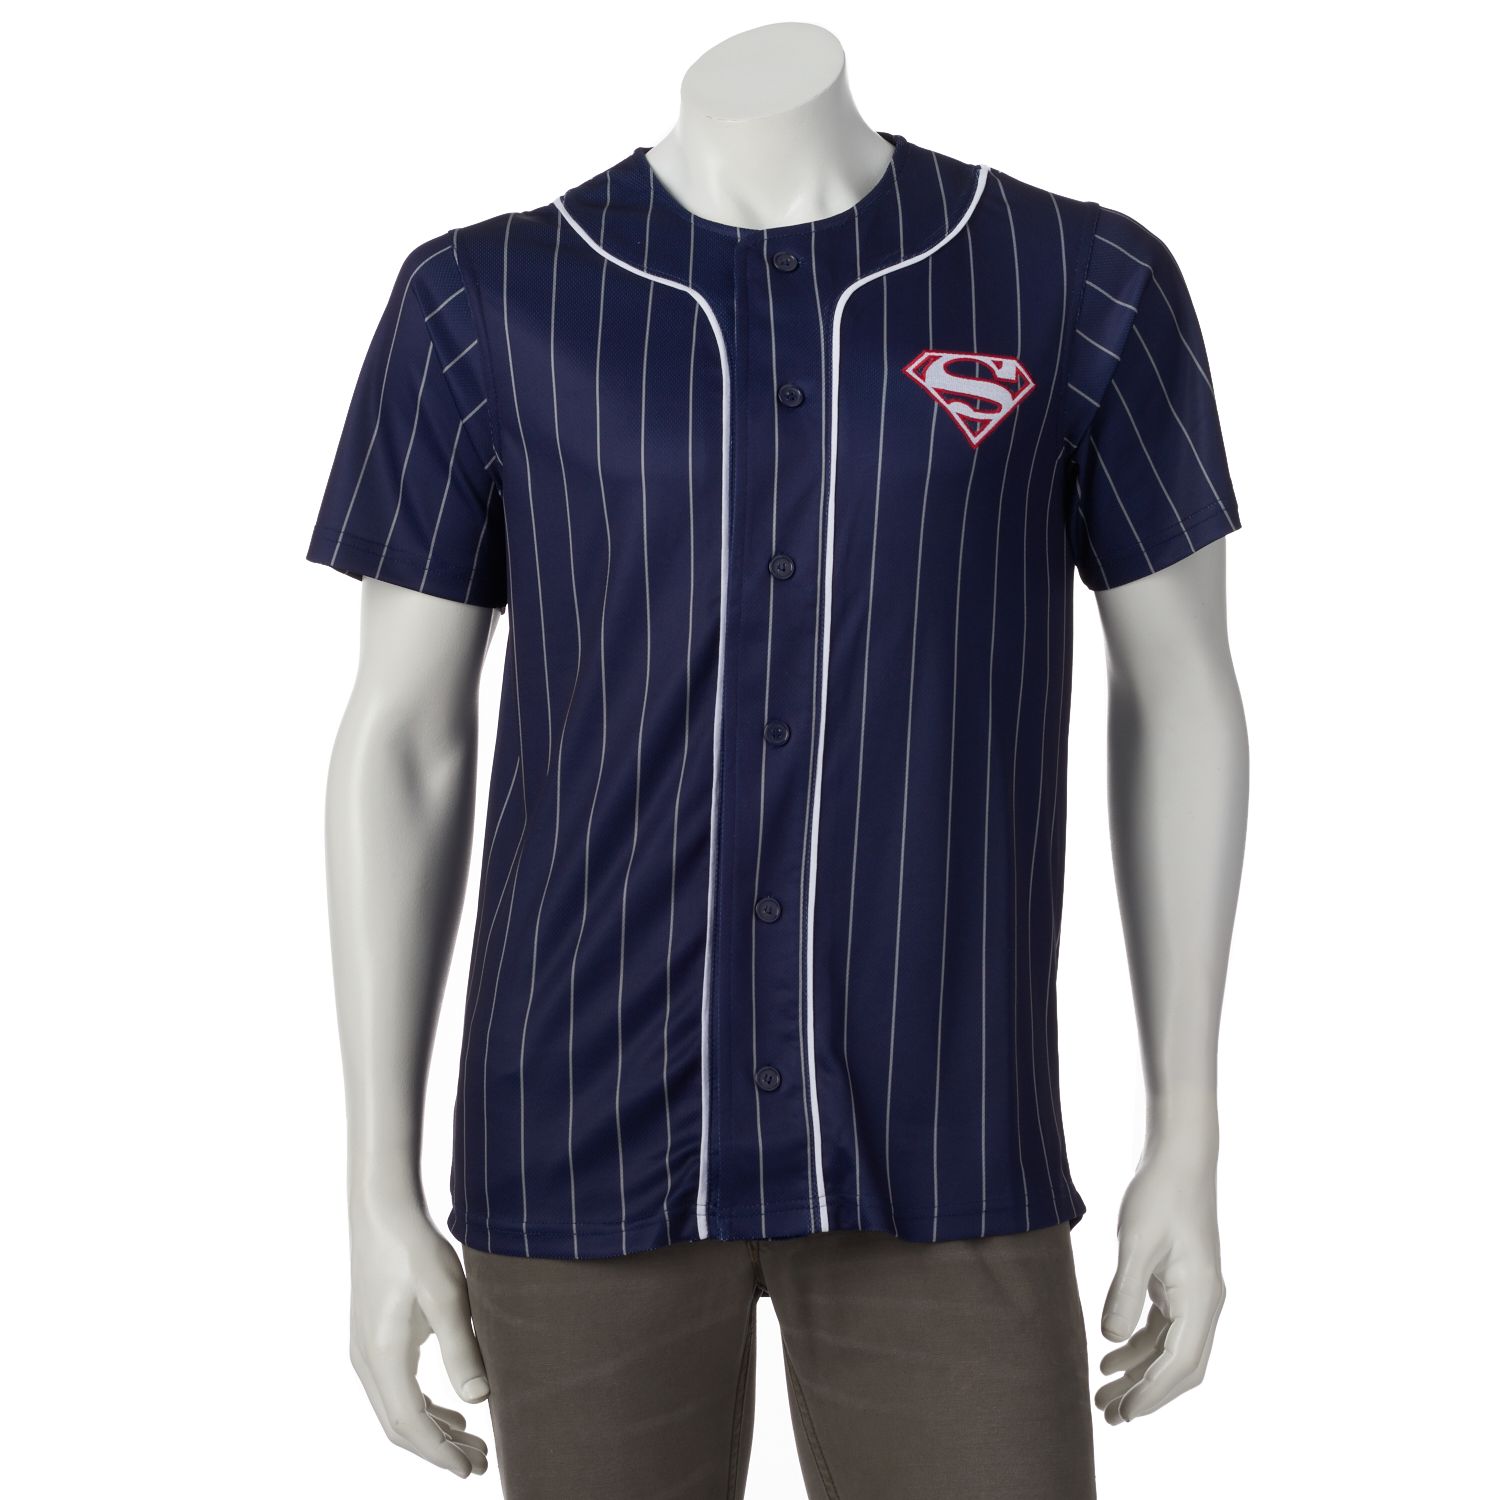 superman baseball jersey